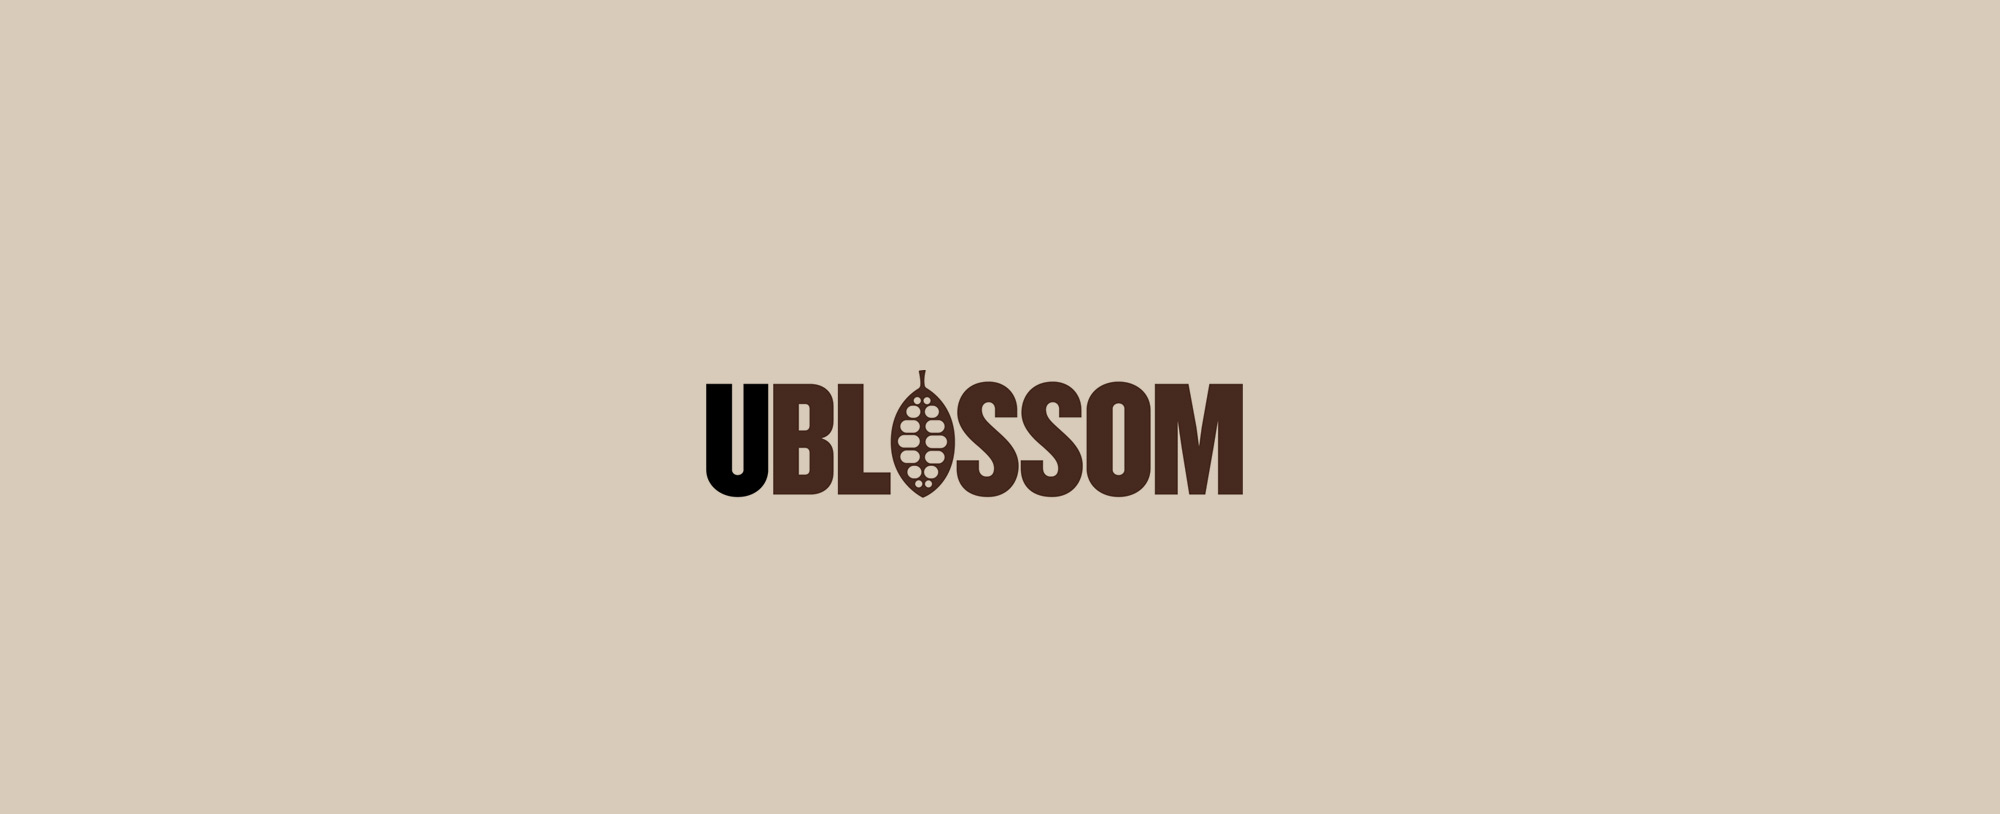 Ublossom-logo